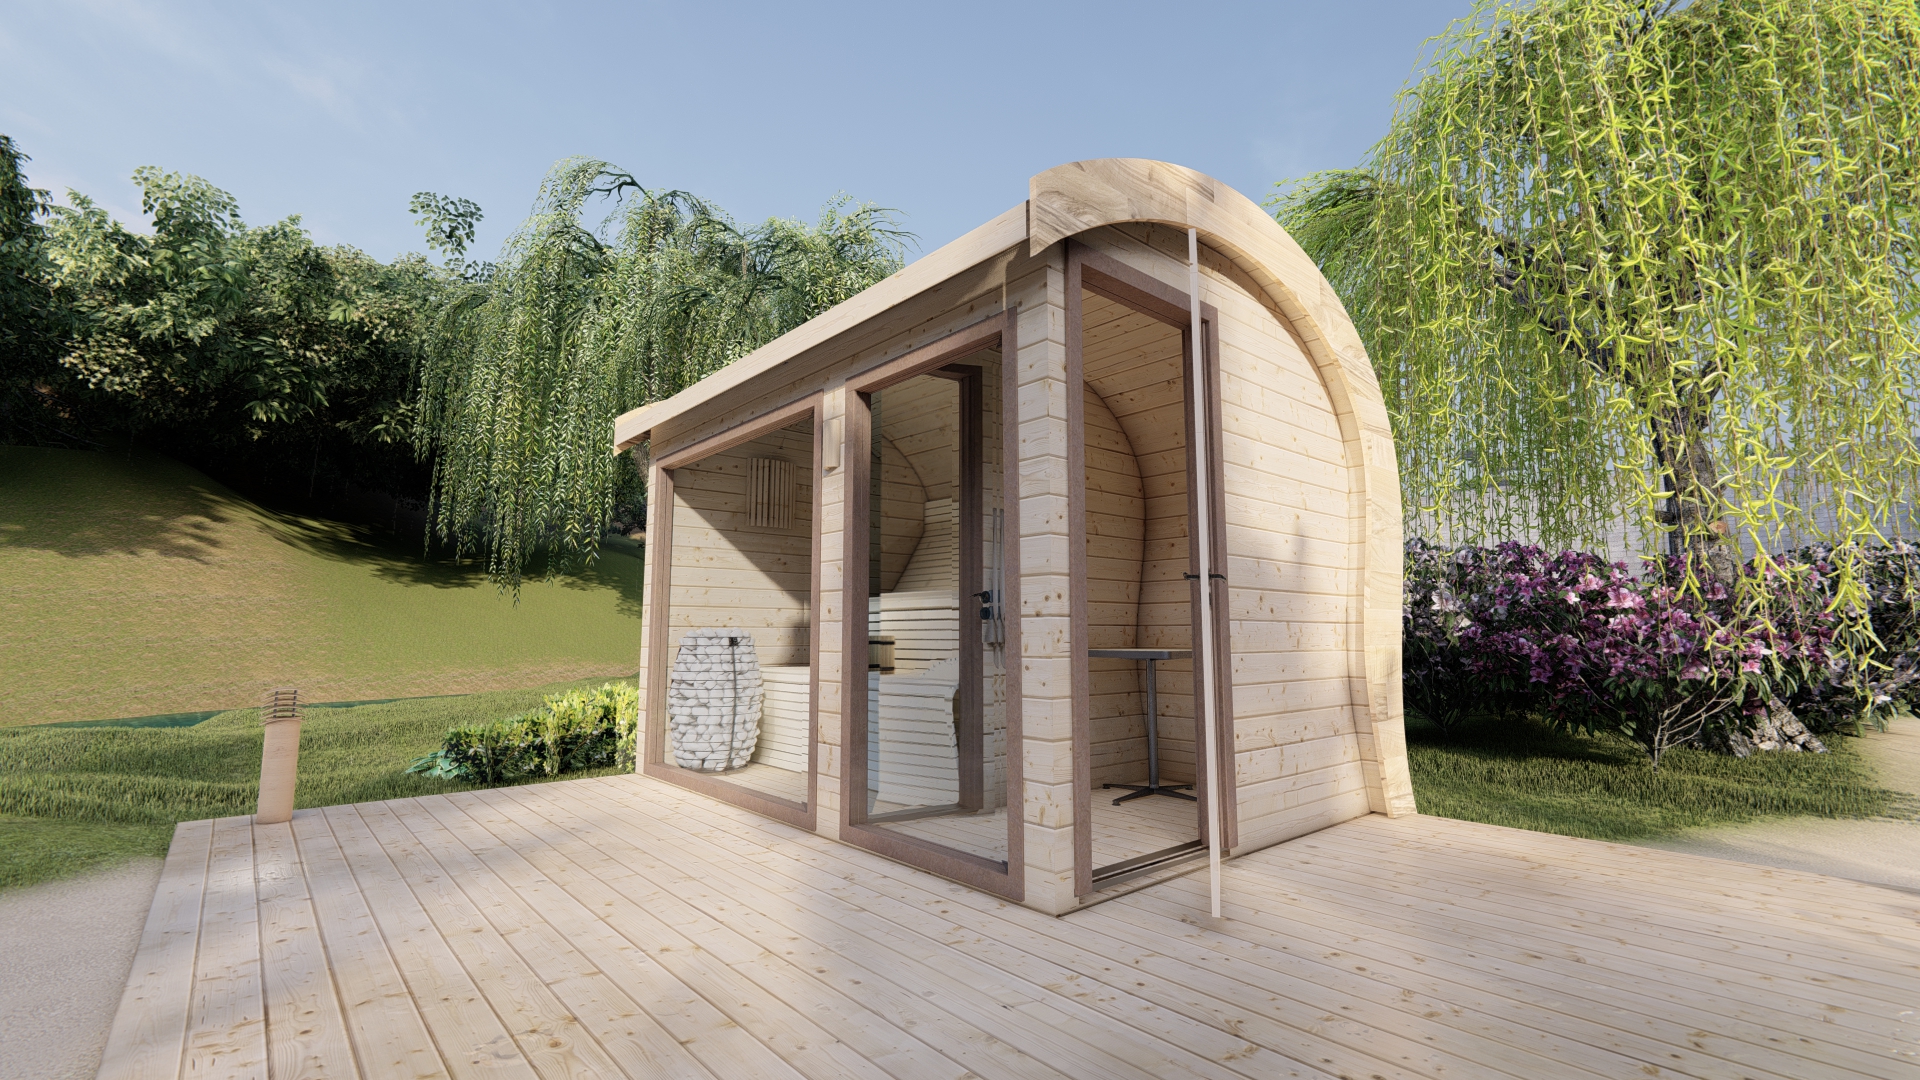 A garden sauna